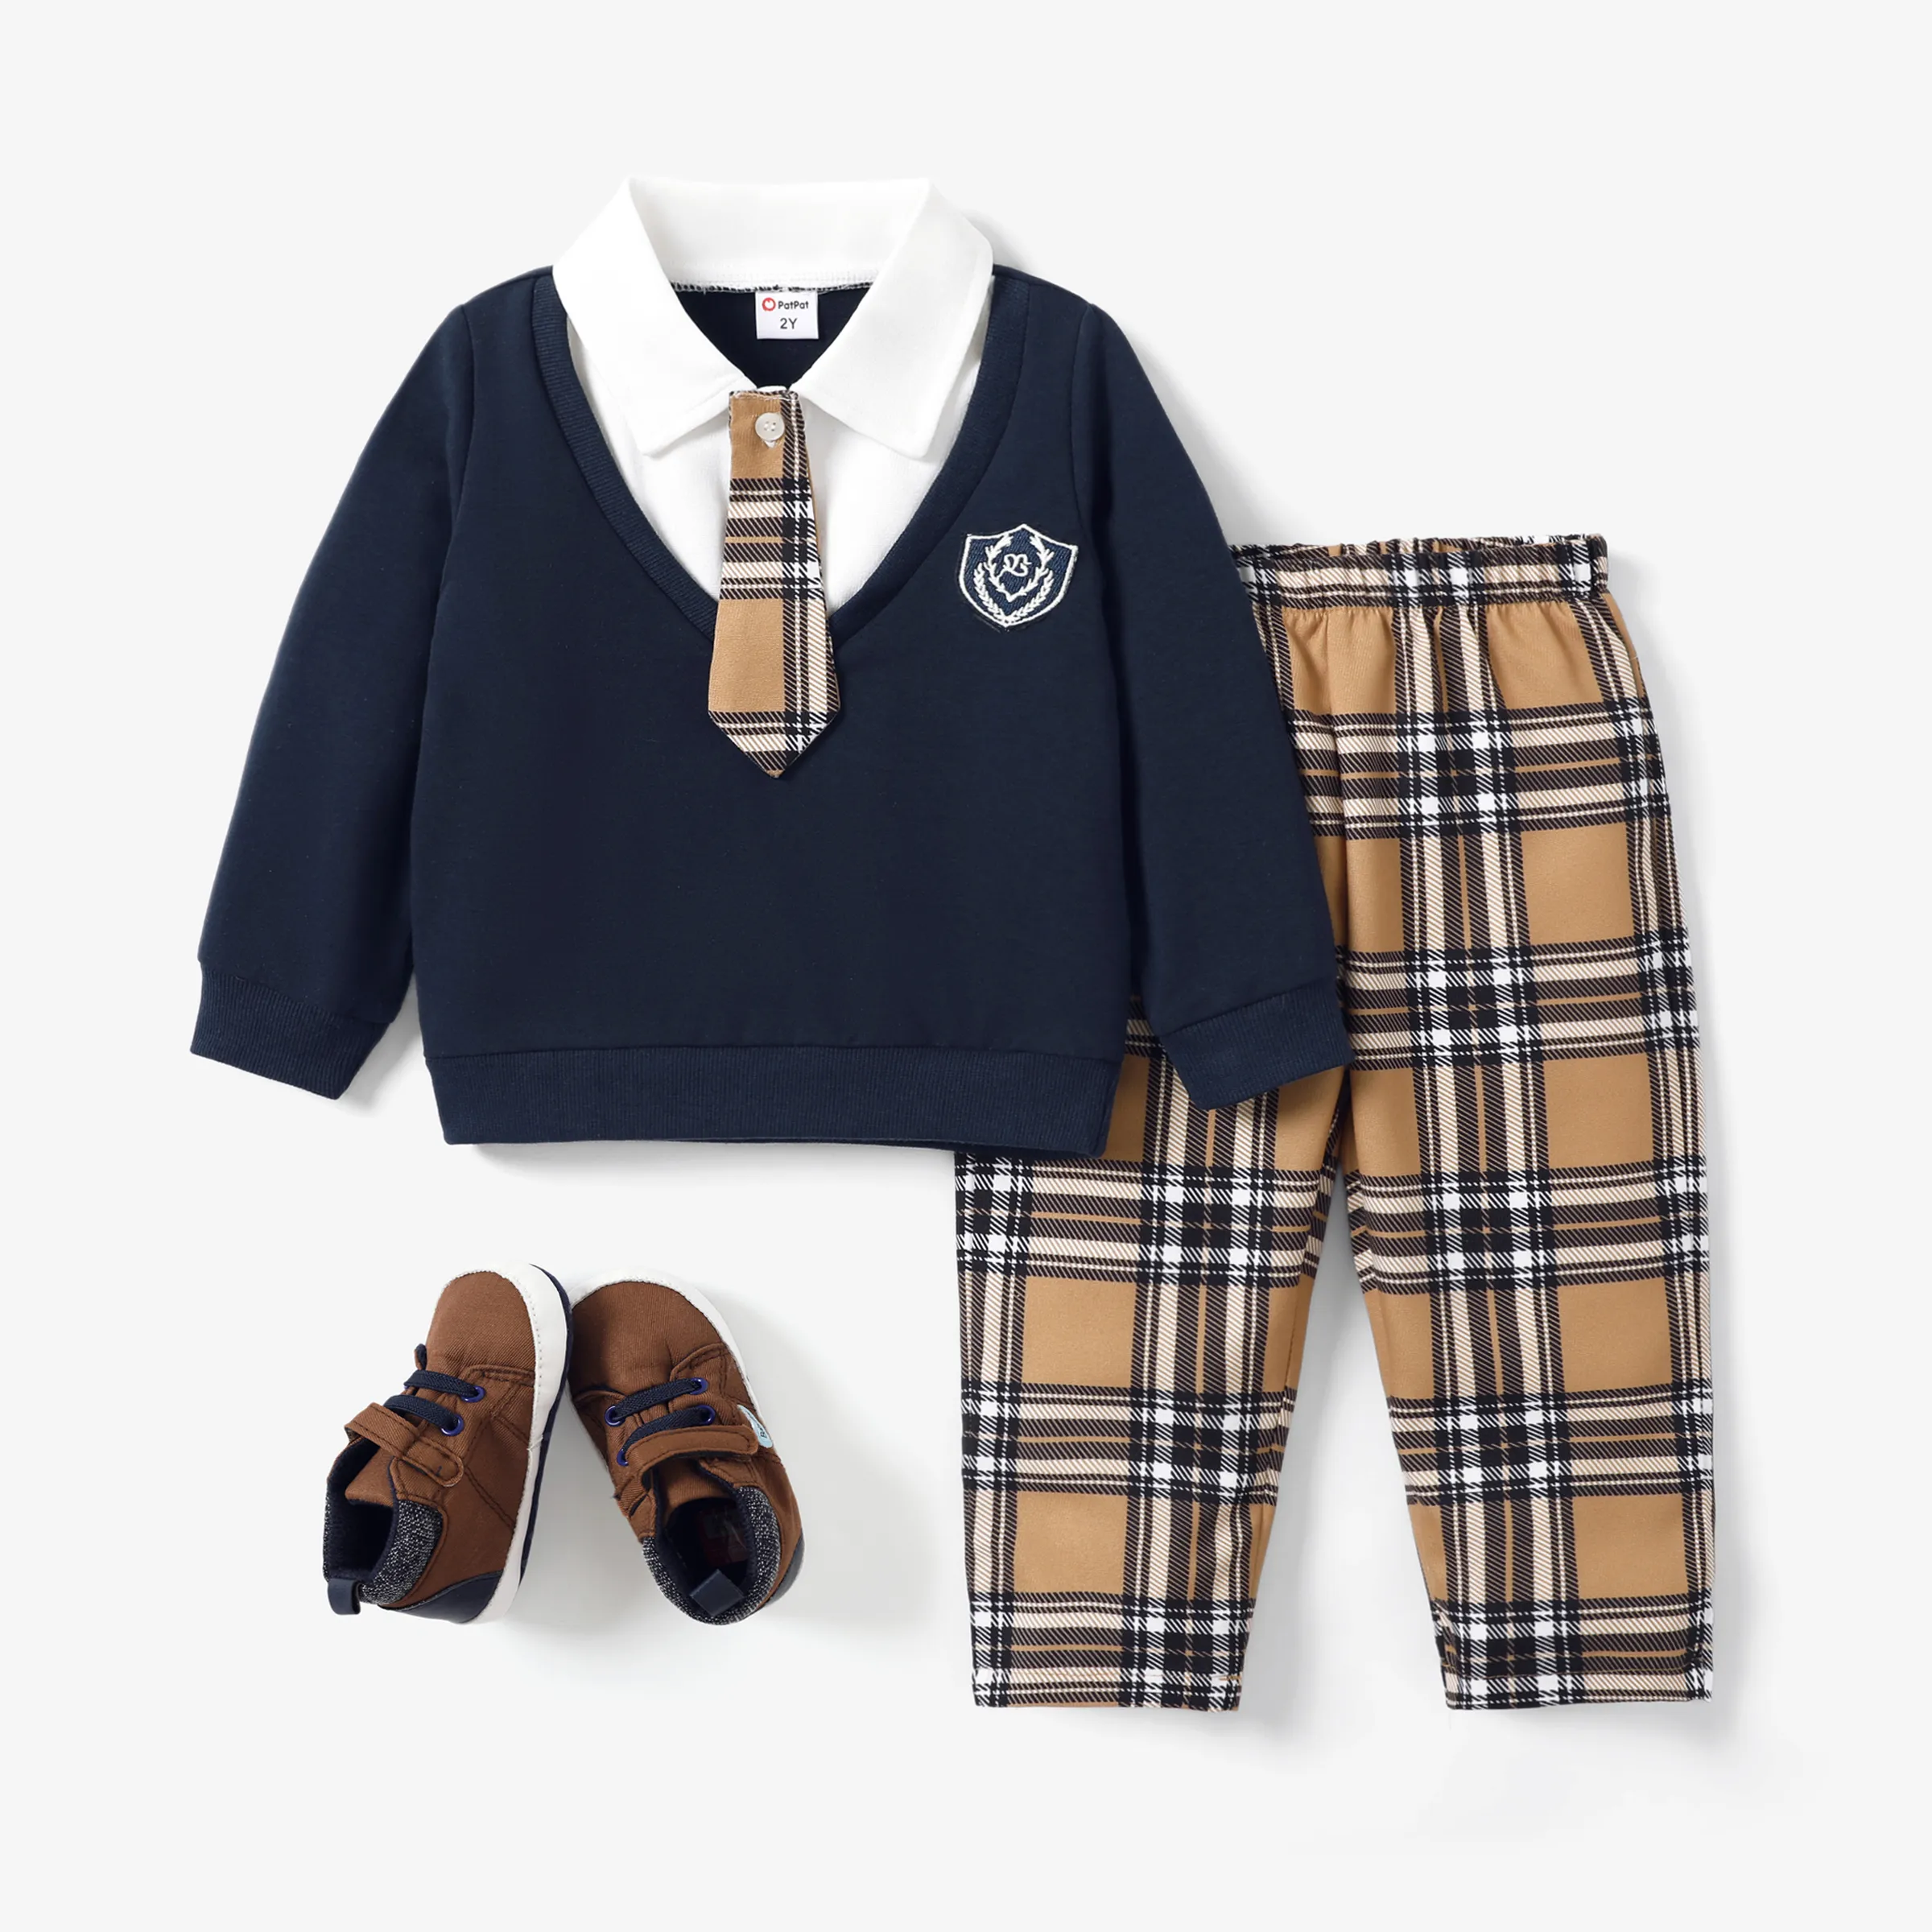 Toddler Boy Uniform Style Grid/Lapel 2pcs Set Or 1 Pair Of Shoes